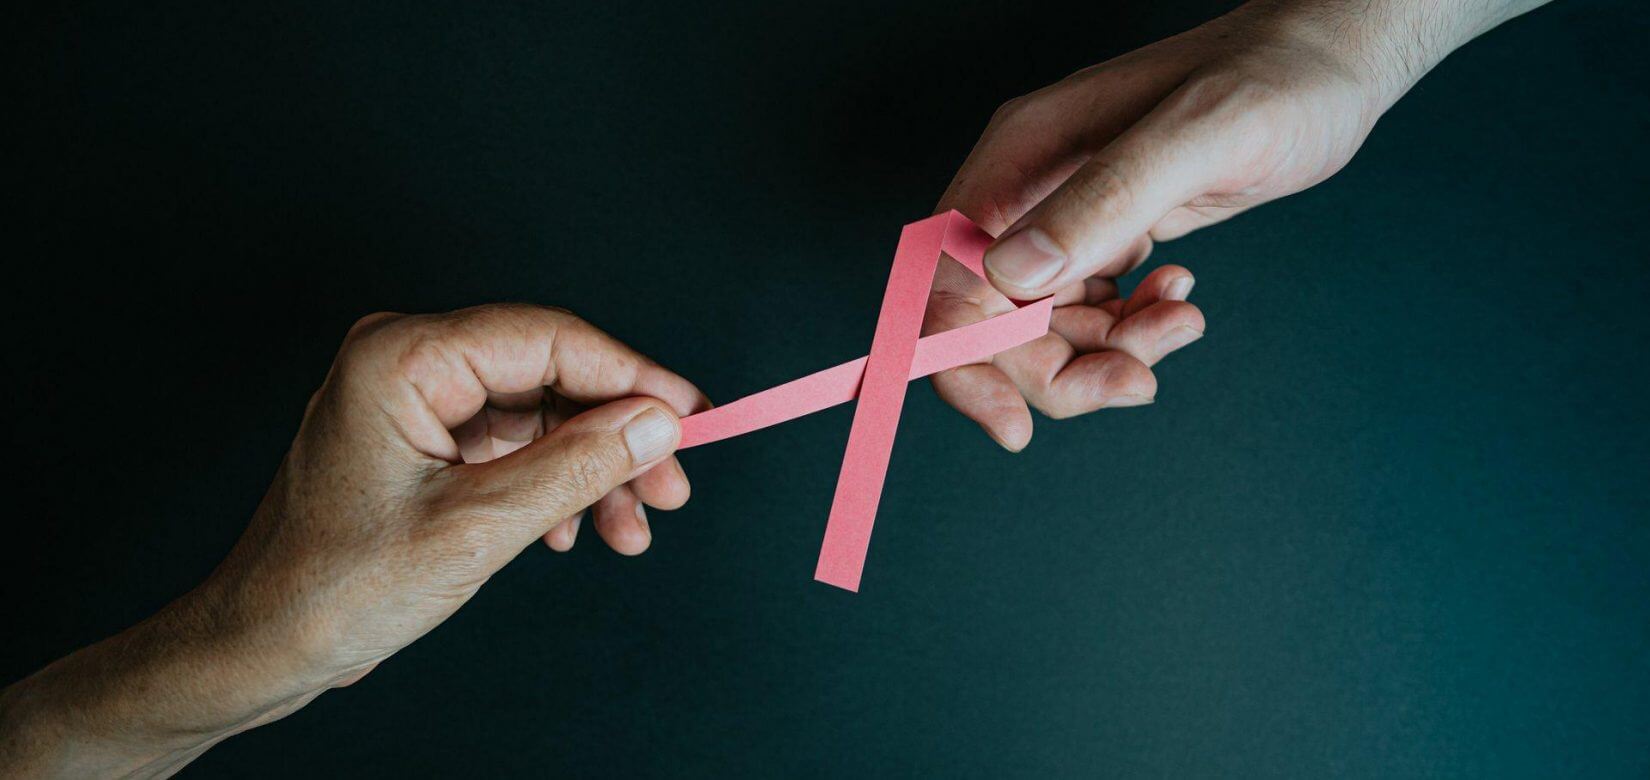 Διαδικτυακή εκδήλωση ενημέρωσης και ευαισθητοποίησης για τον καρκίνο του μαστού από τη Γενική Γραμματεία Οικογενειακής Πολιτικής & Ισότητας των Φύλων